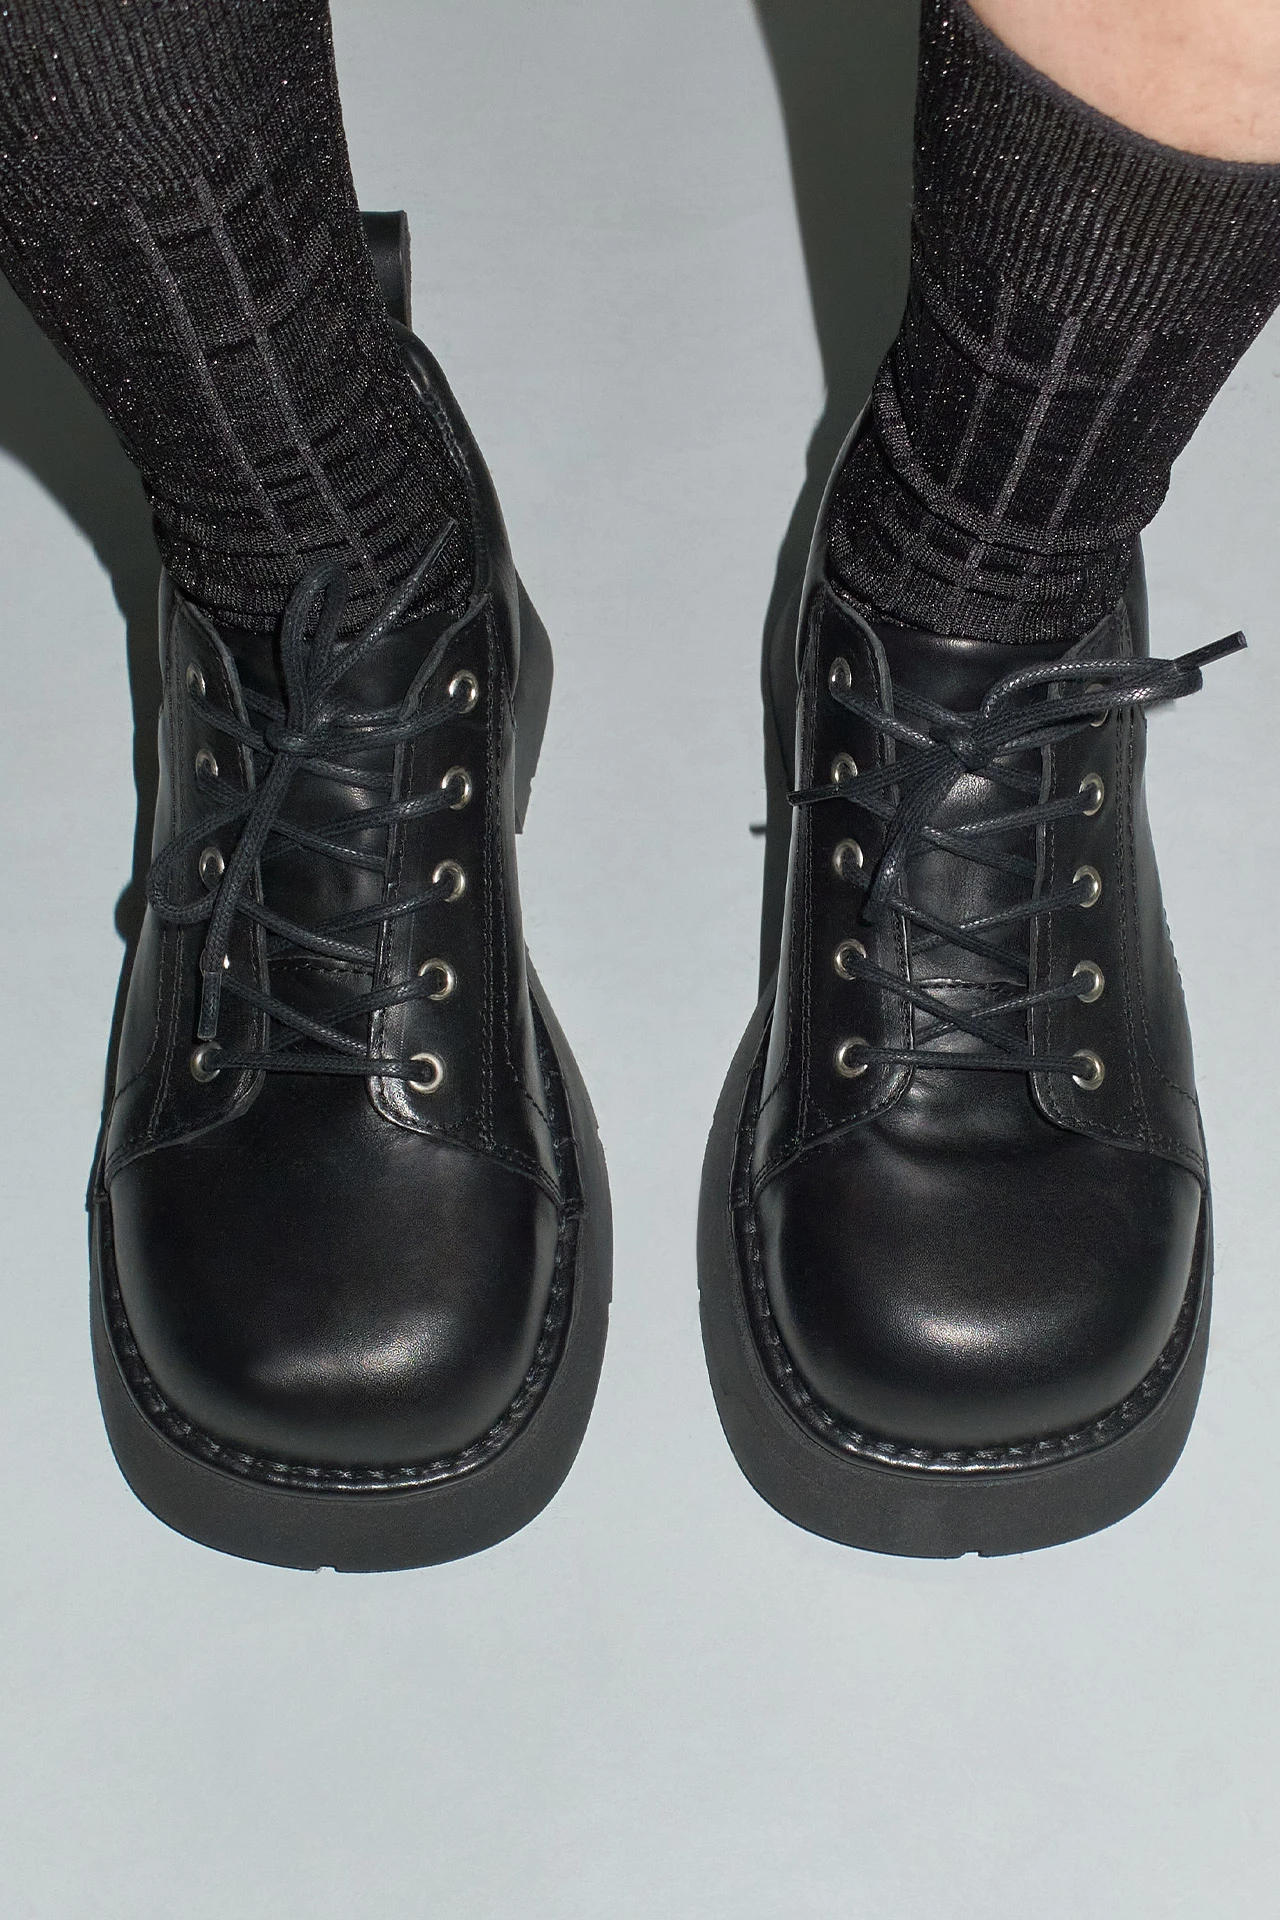 EC-E8-Erina-Black-Boots-04